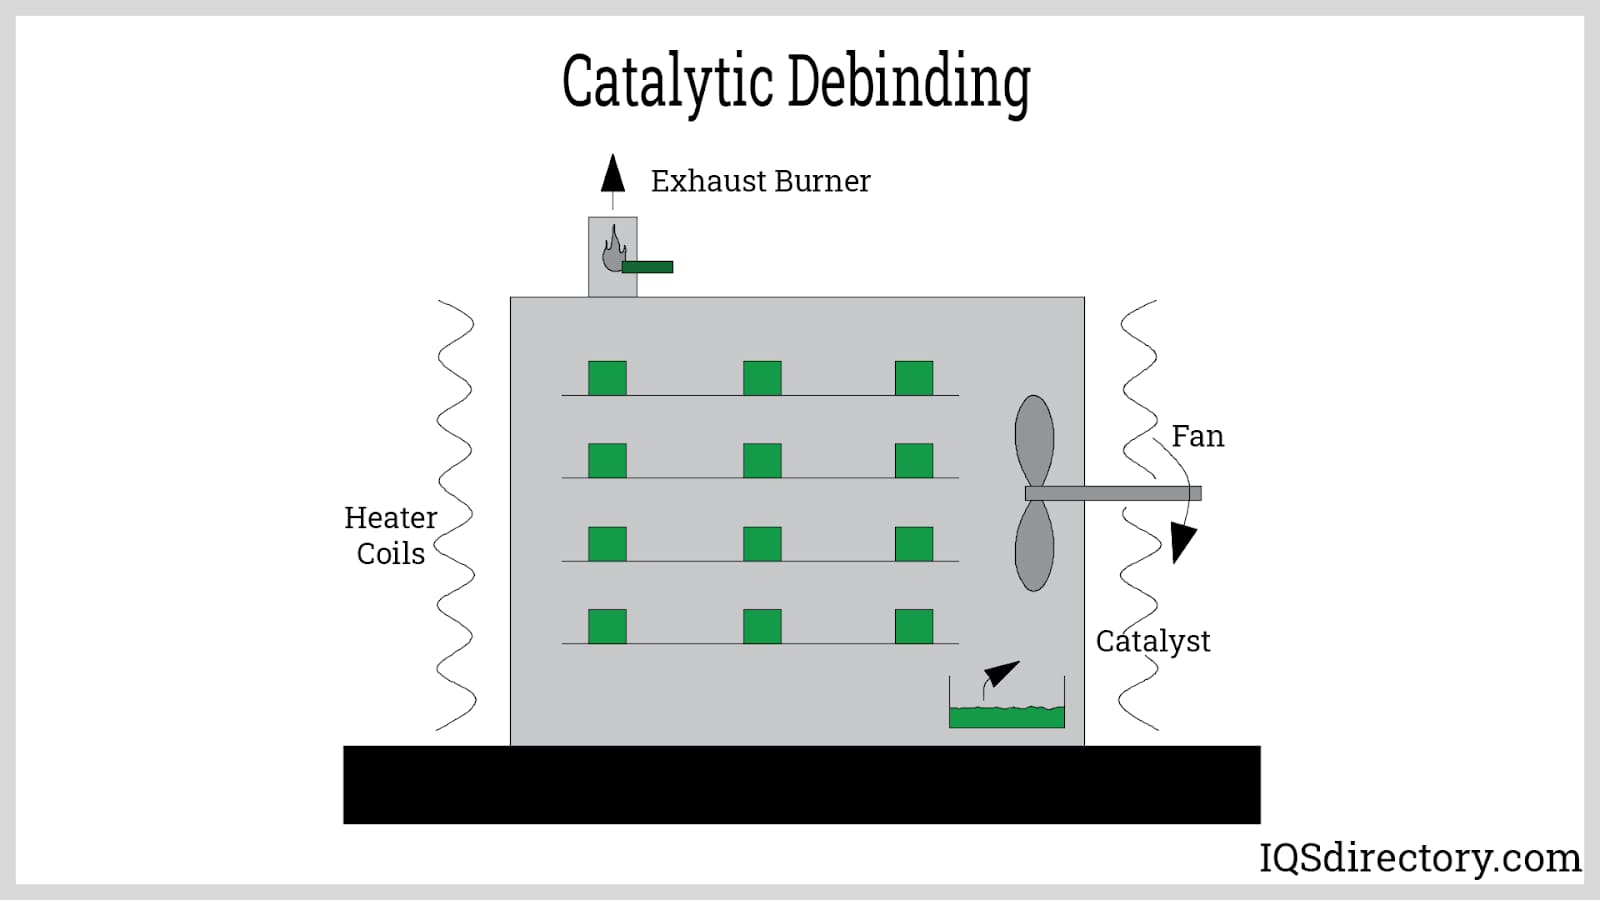 Catalytic Debinding